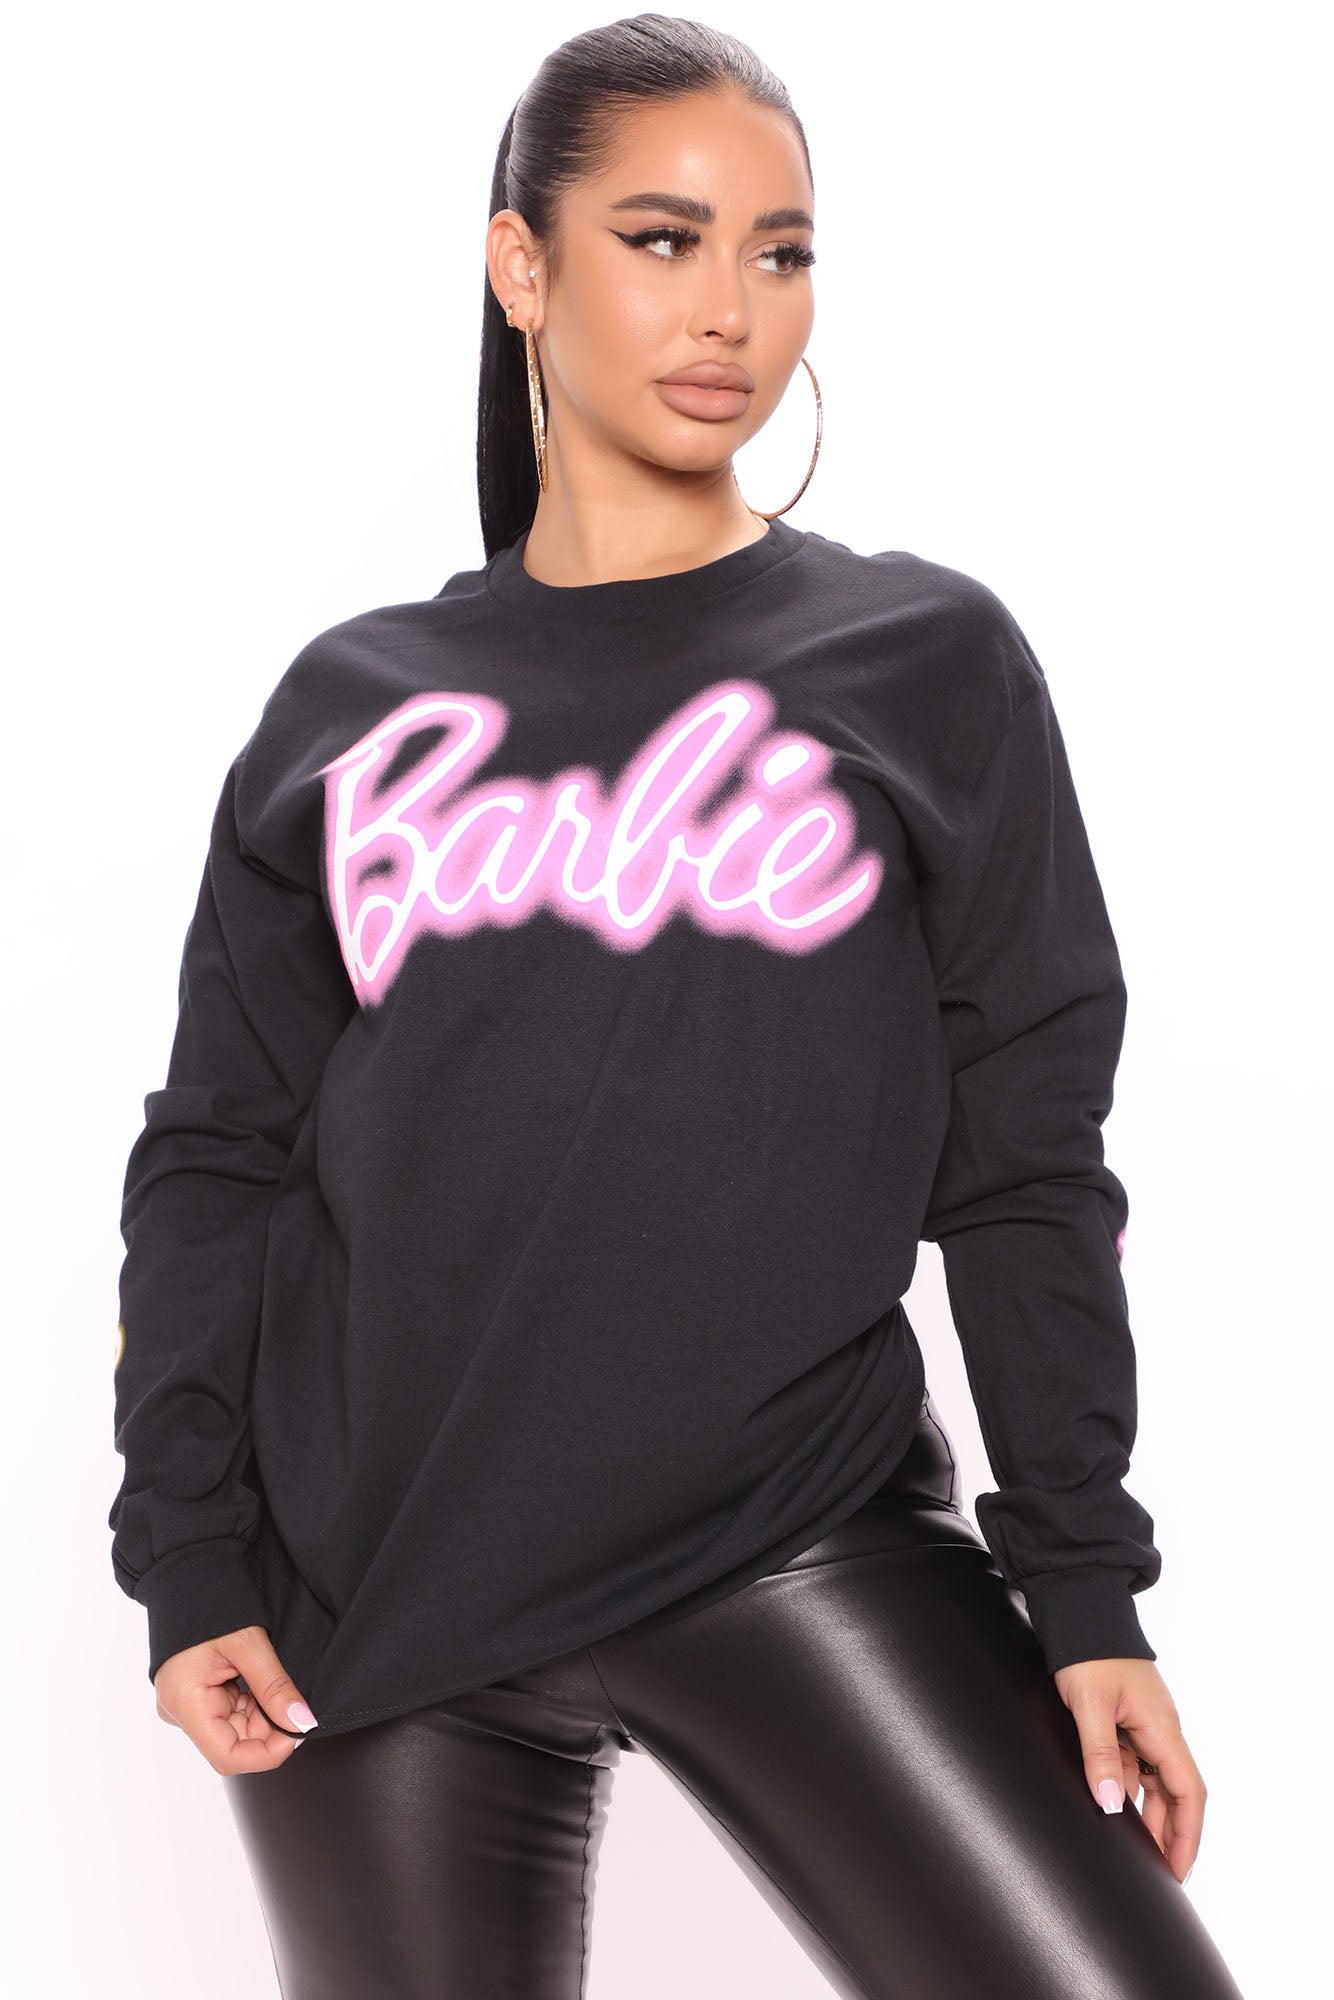 Womens Barbie Sweatshirt Unique Barbie T Shirt Barbie Outfits